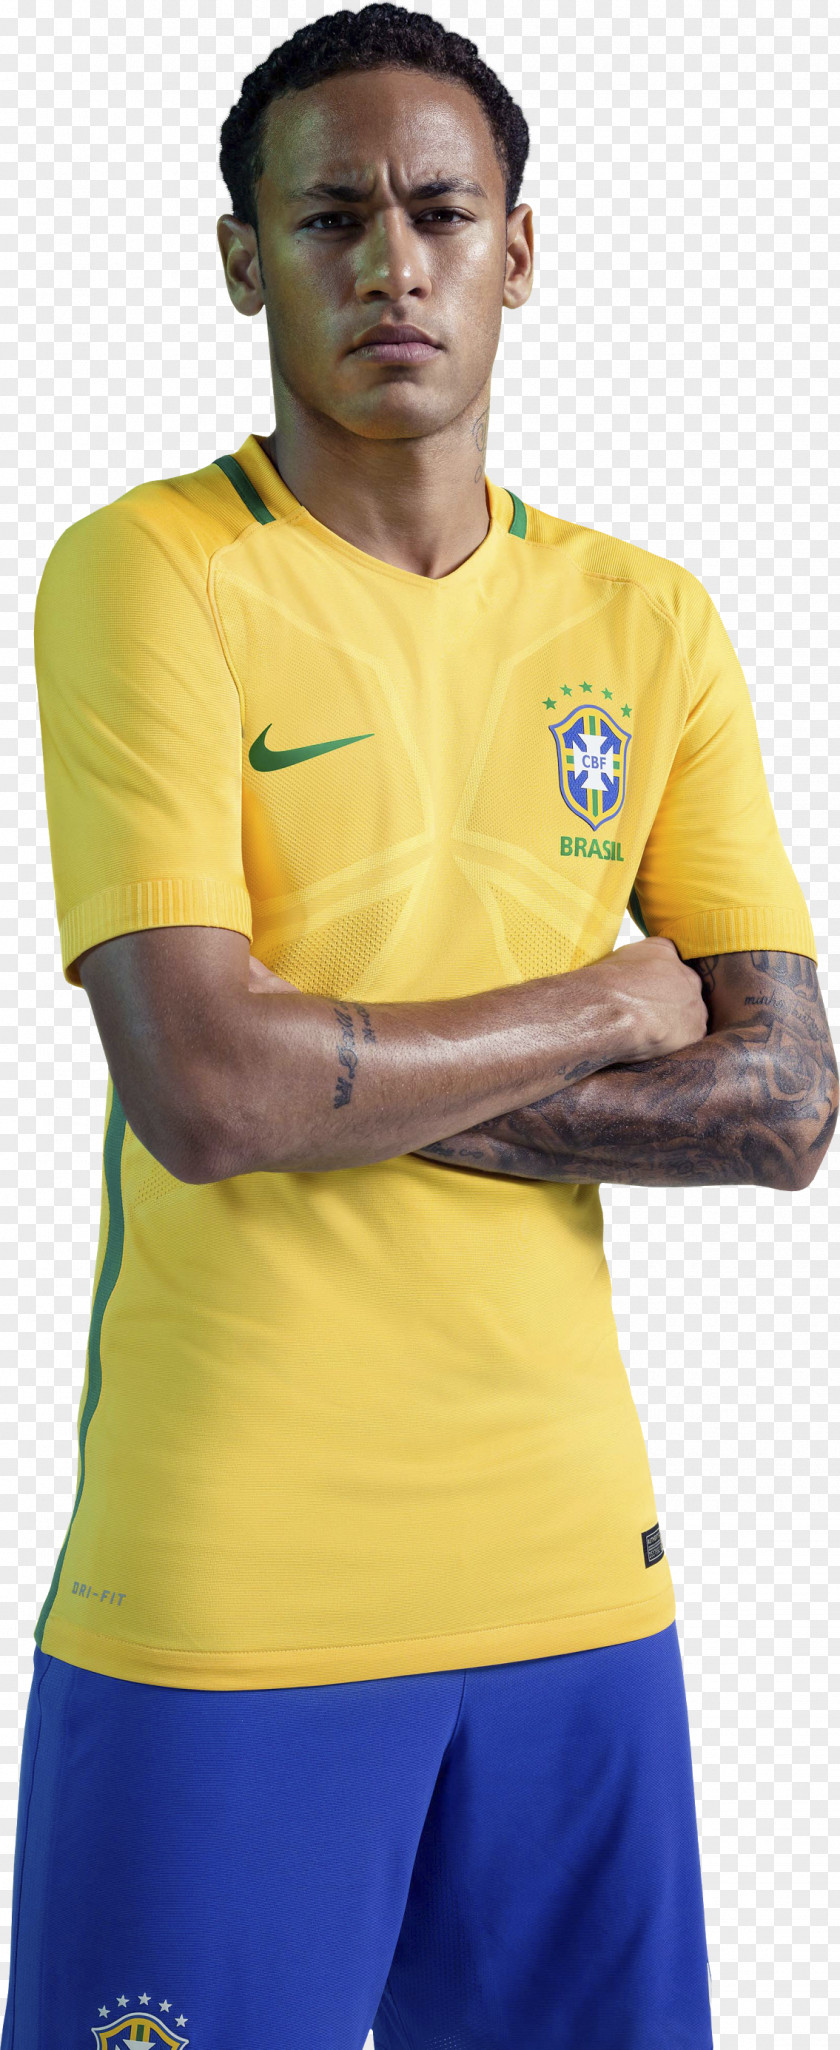 Neymar 2018 World Cup Jersey Brazil National Football Team T-shirt PNG